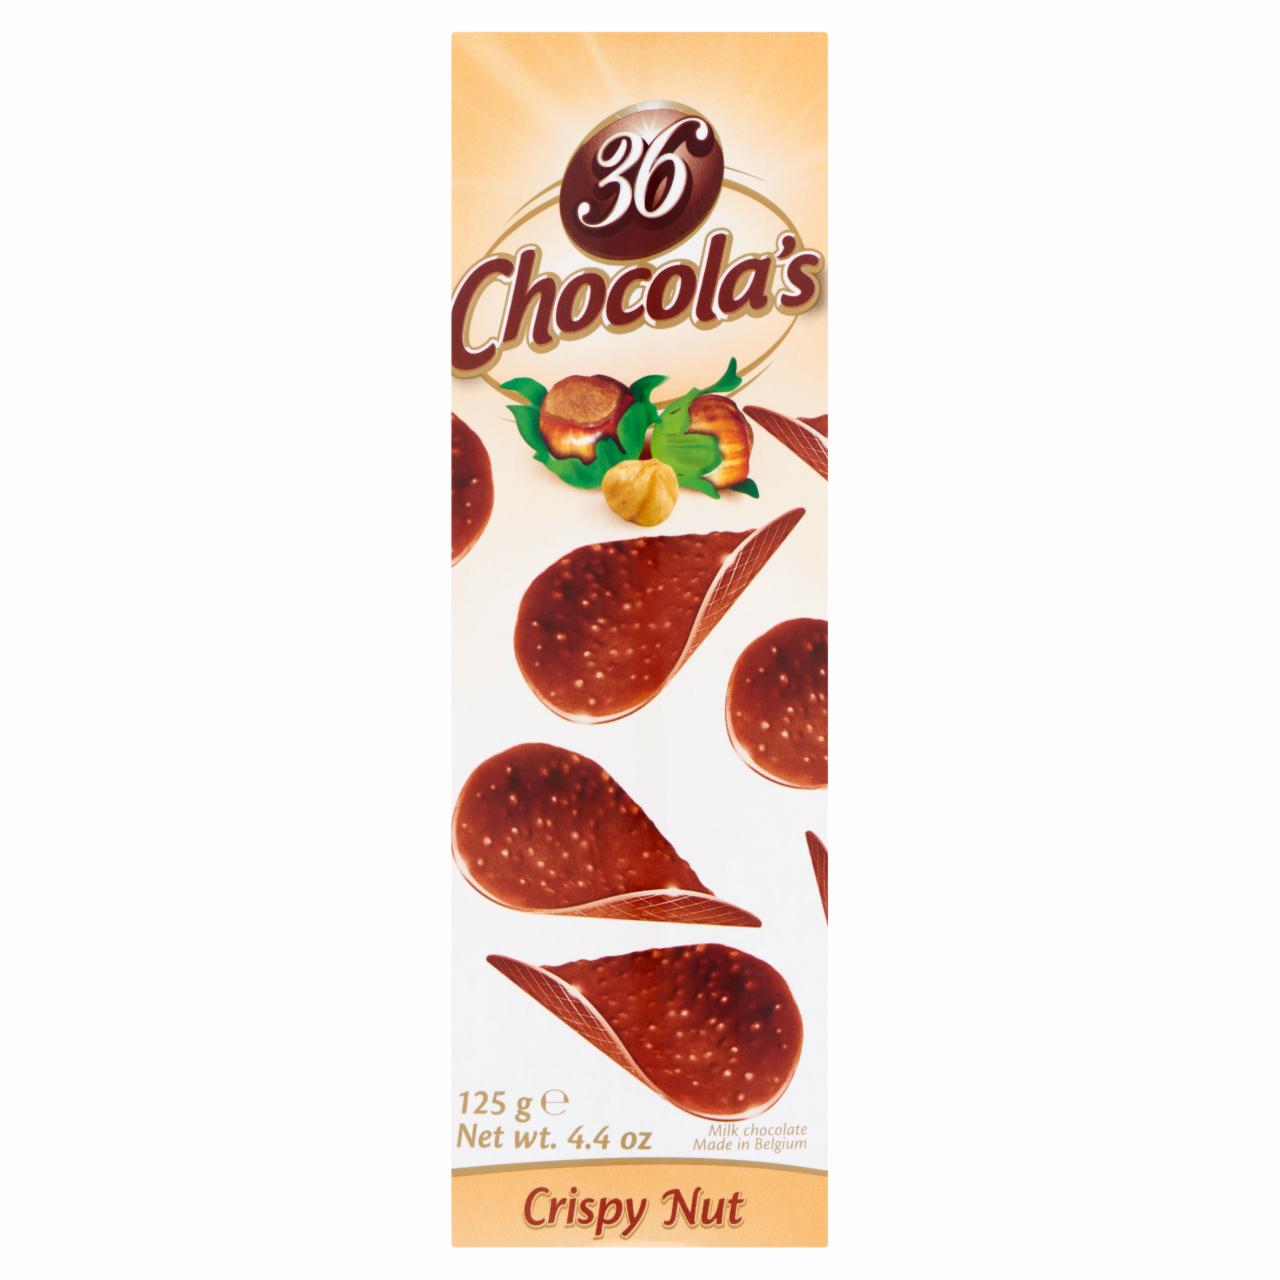 Képek - Hamlet 36 Chocola's Crispy Nut tejcsokoládé puffasztott rizzsel és mogyoróval 125 g